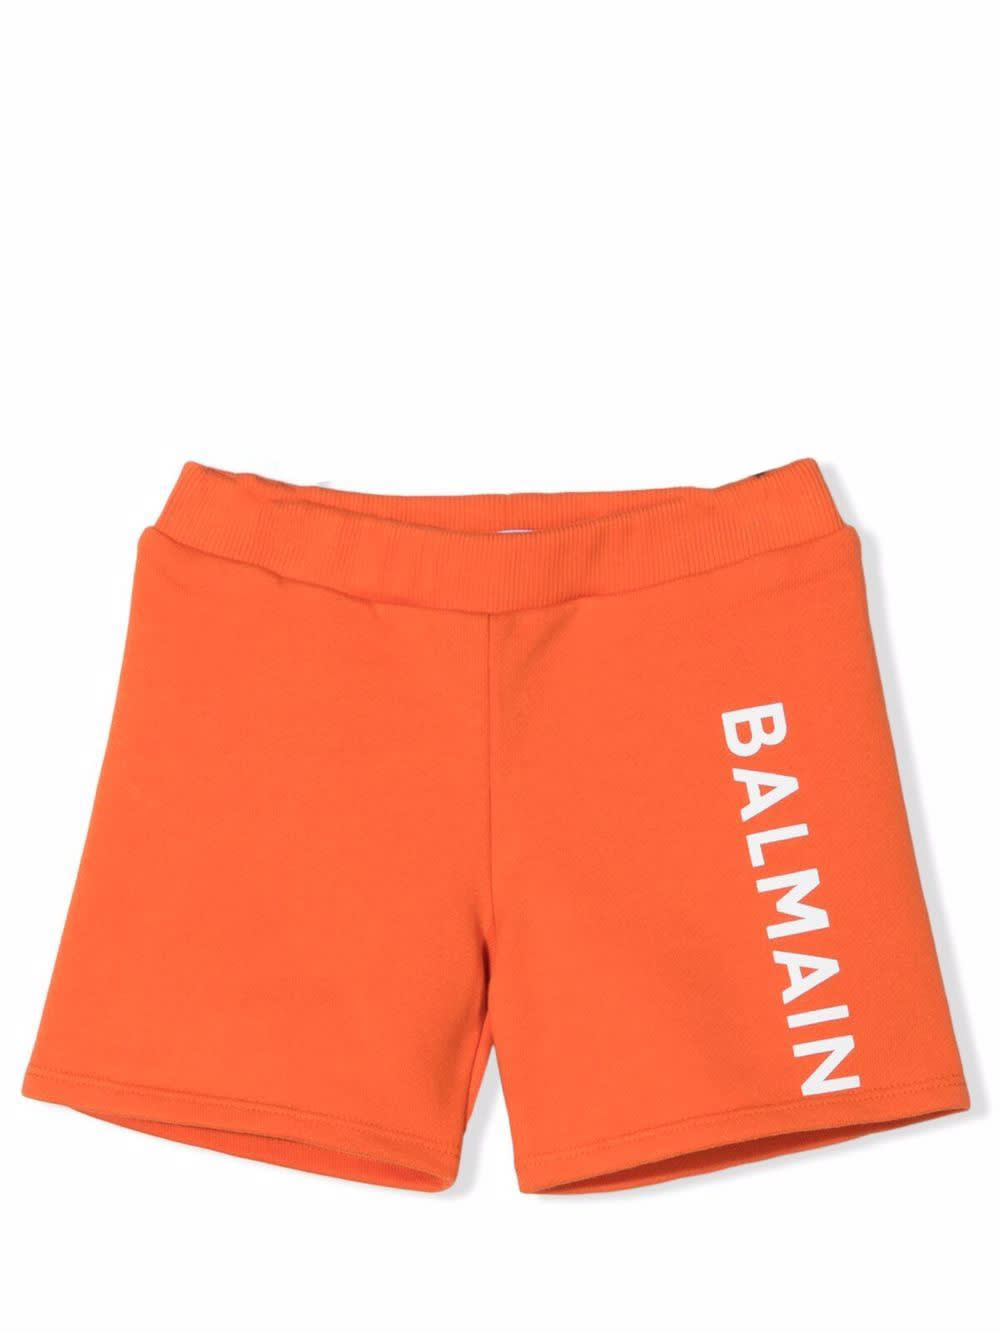 Balmain Shorts With Print